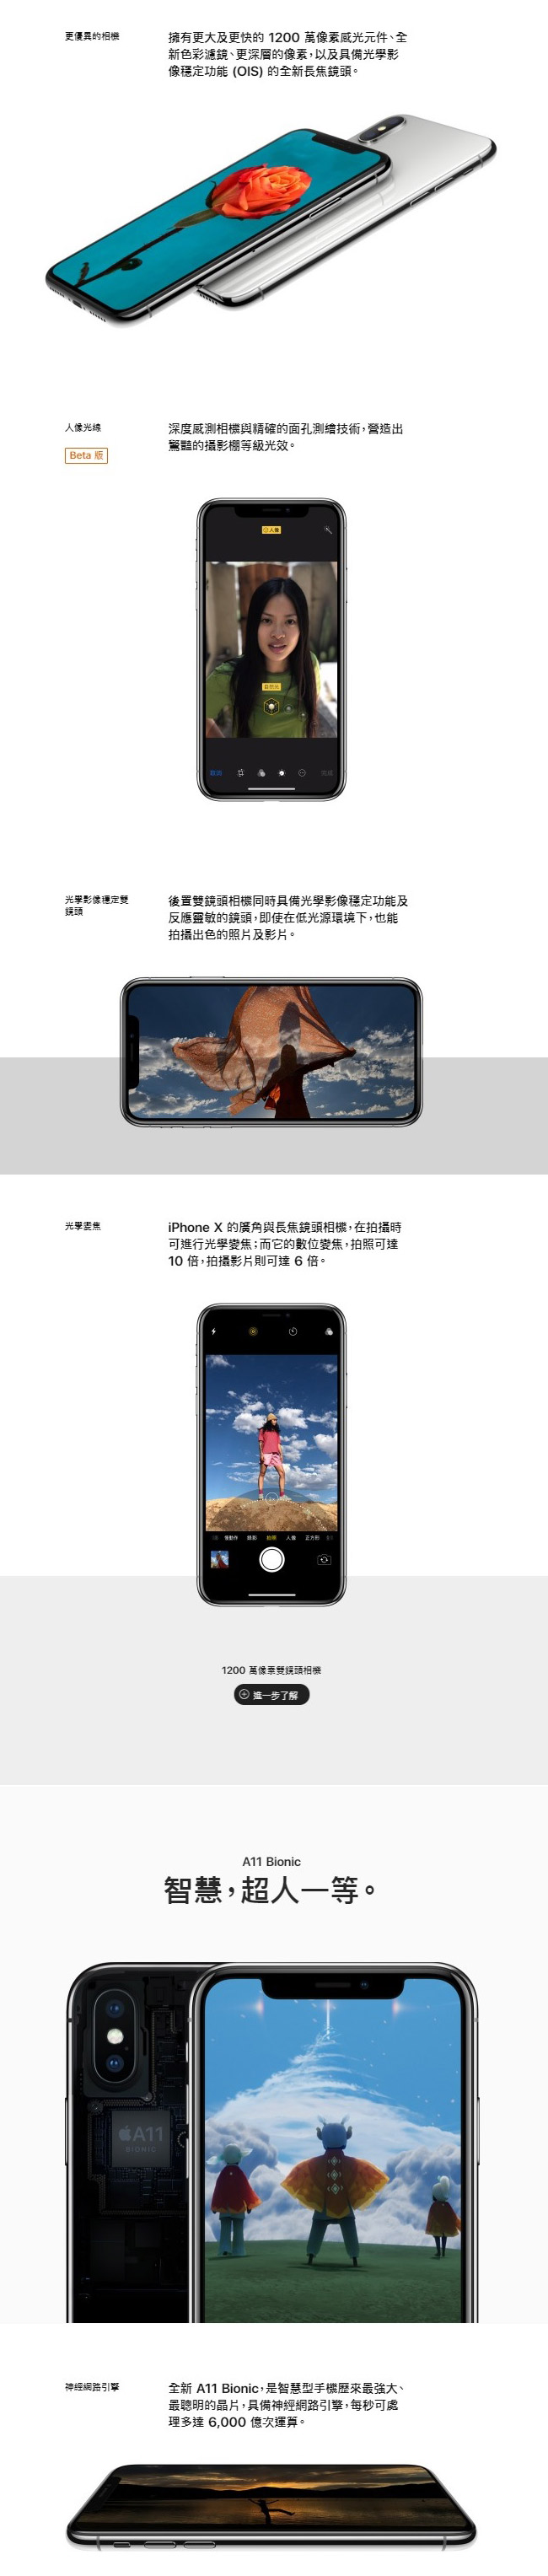 【官方認證福利品】Apple iPhone X 256G 5.8吋智慧型手機